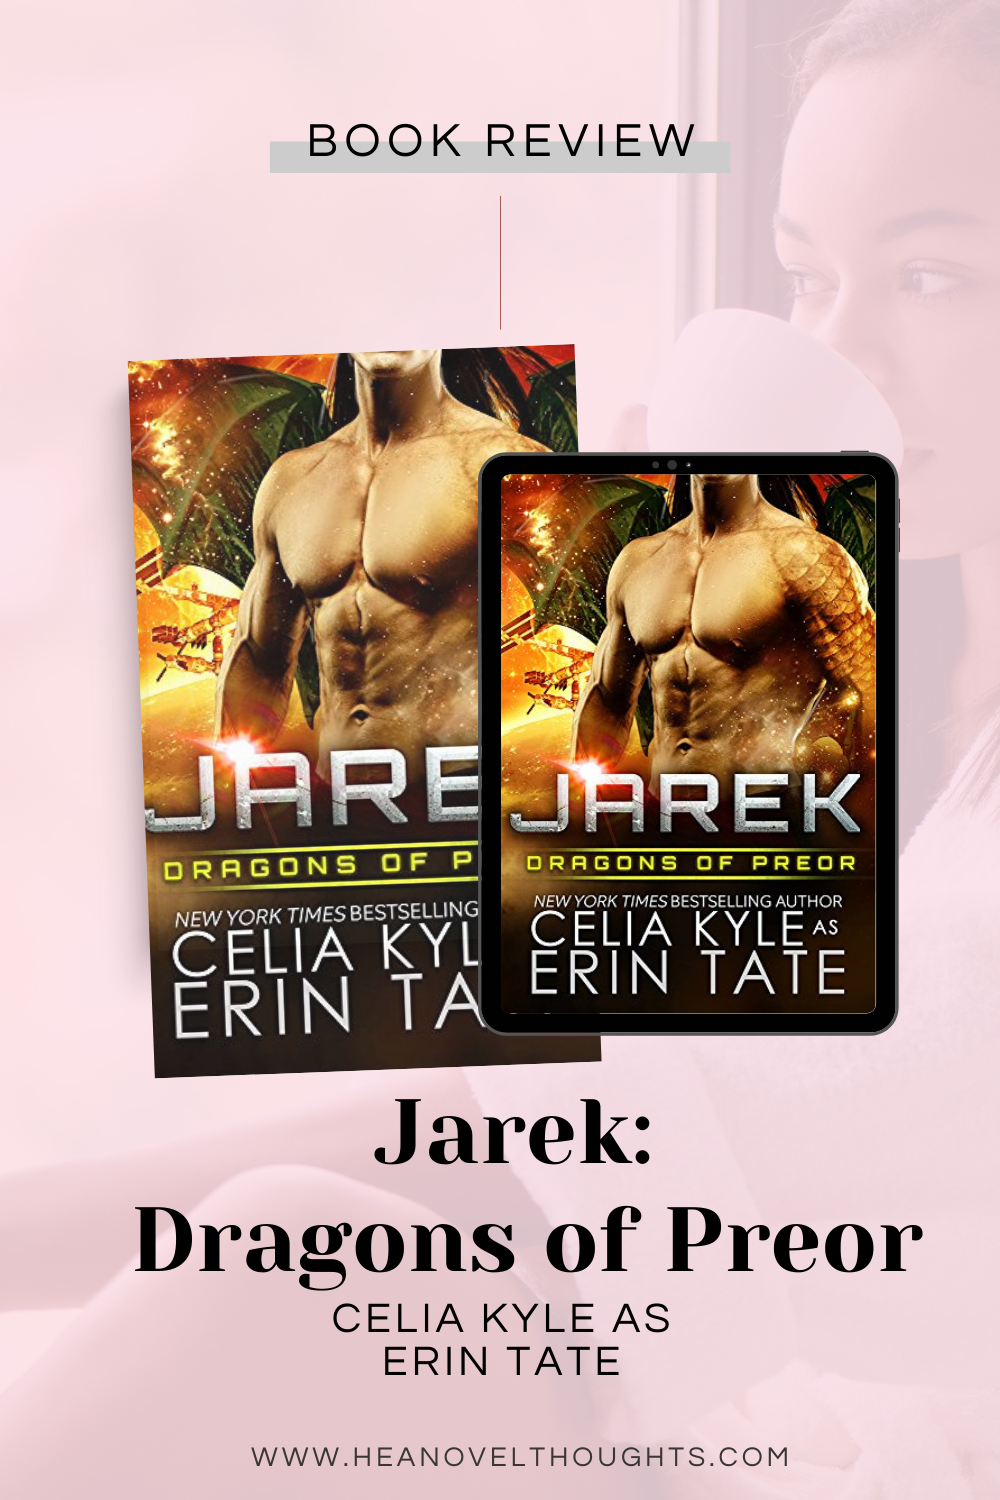 Jarek: Dragons of Preor by Celia Kyle as Erin Kyle